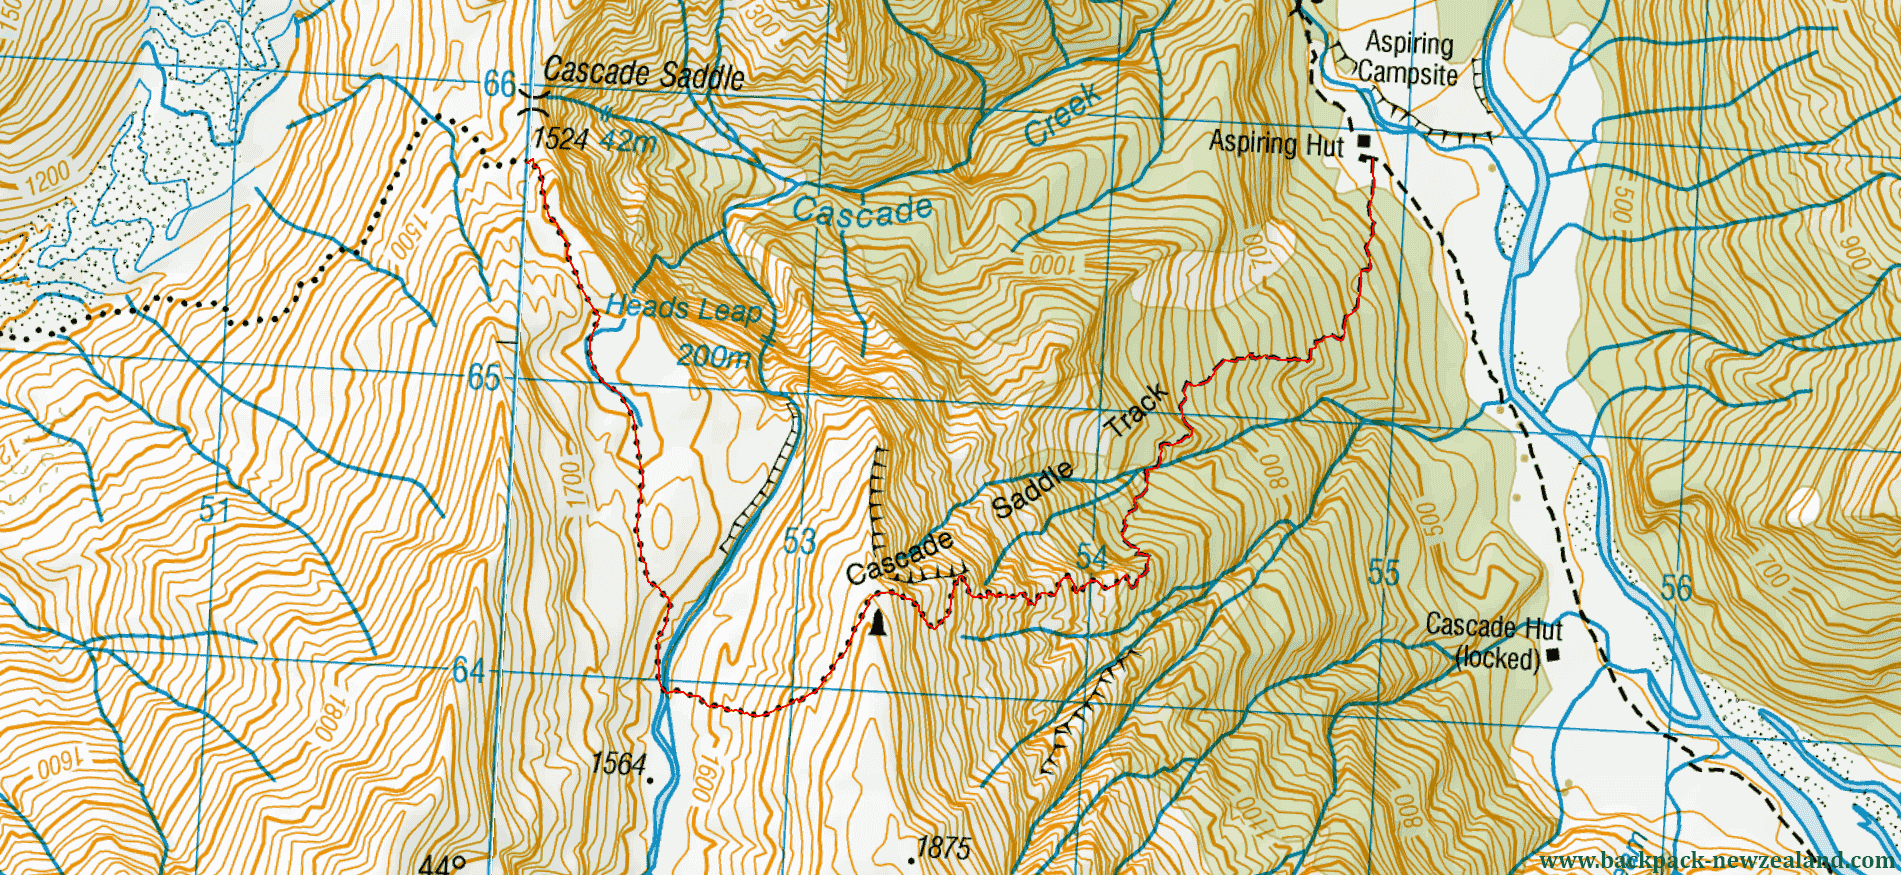 Cascade Saddle Track Map - New Zealand Tracks